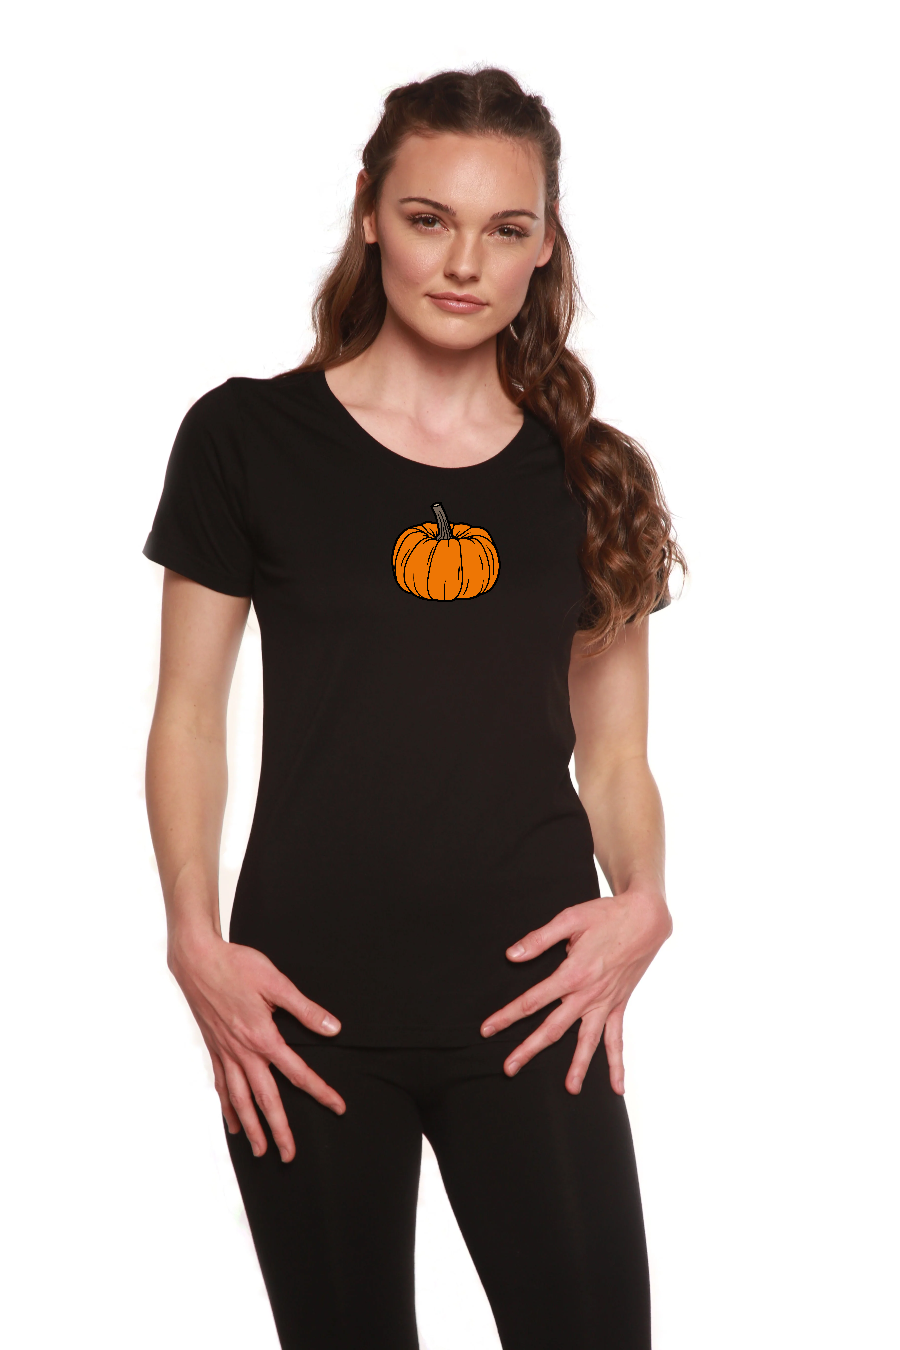 Pumpkin Women's Bamboo/Cotton Short Sleeve Scoop Neck Printed T-Shirt